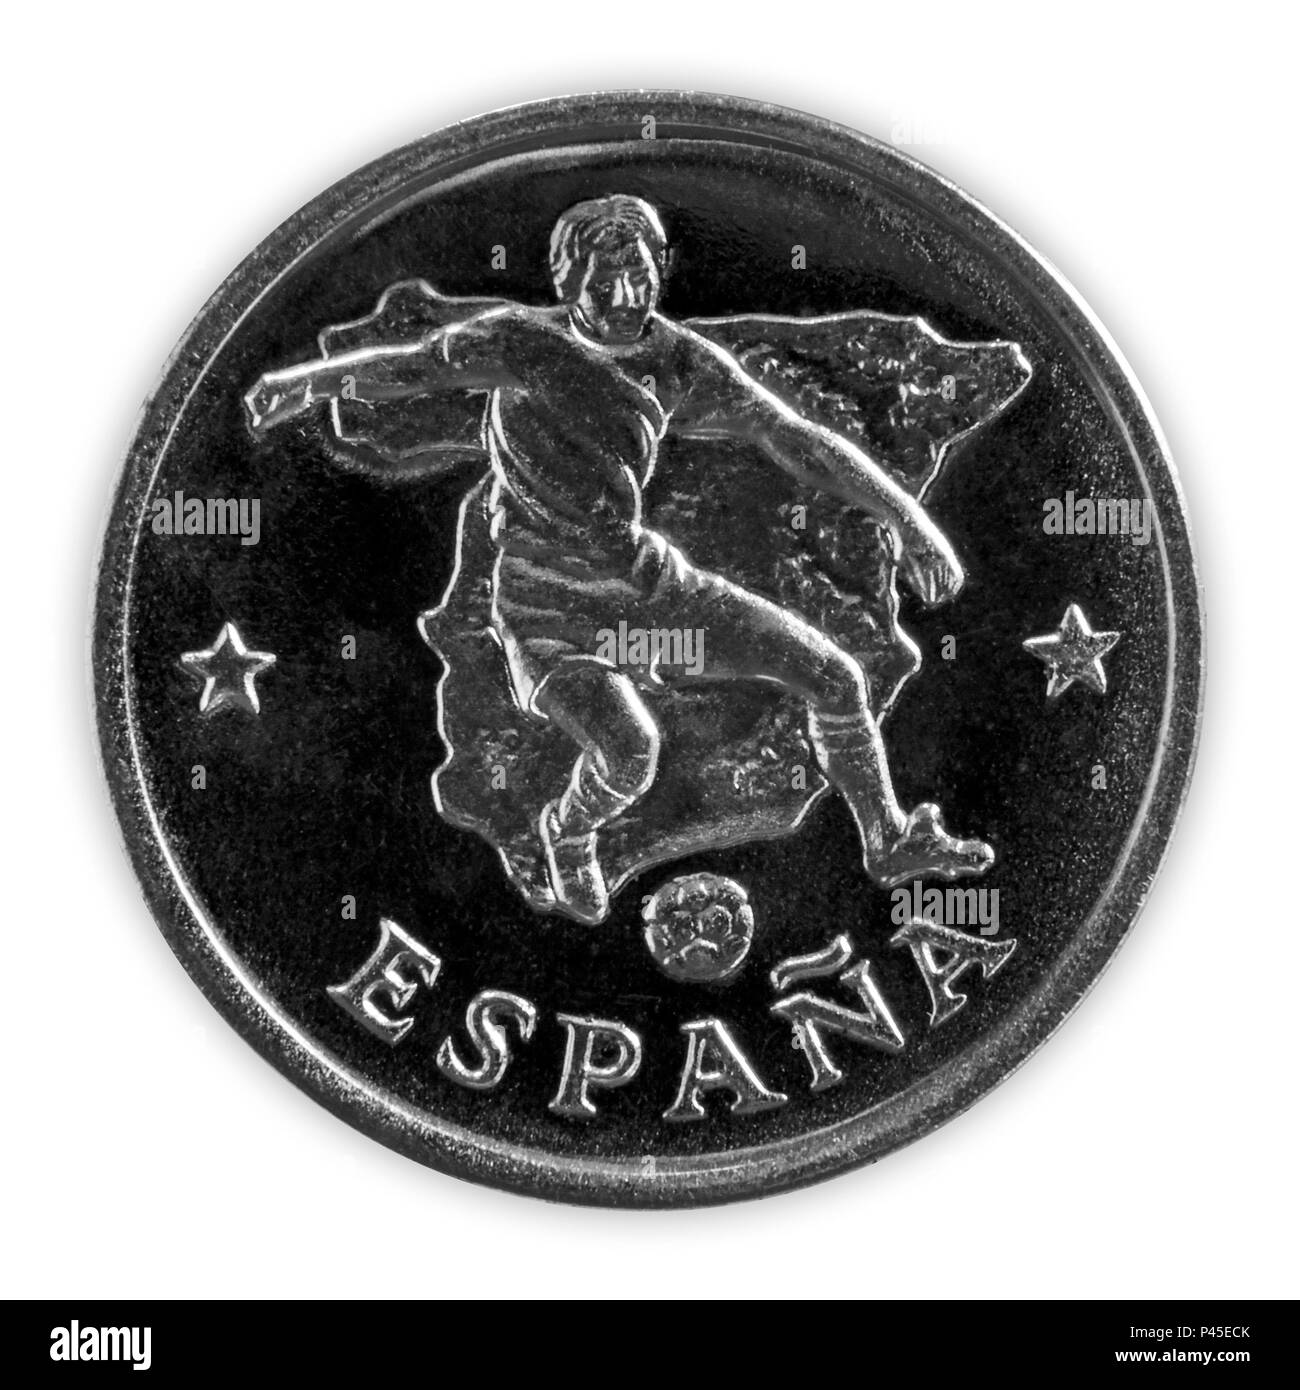 Espagne - le 18 juin 2018 : Coupe du Monde de la FIFA - monnaie commémorative doté d''un joueur de football dans l'équipe Espagnole, intitulé Espana, avec carte de l'Espagne dans la ba Banque D'Images